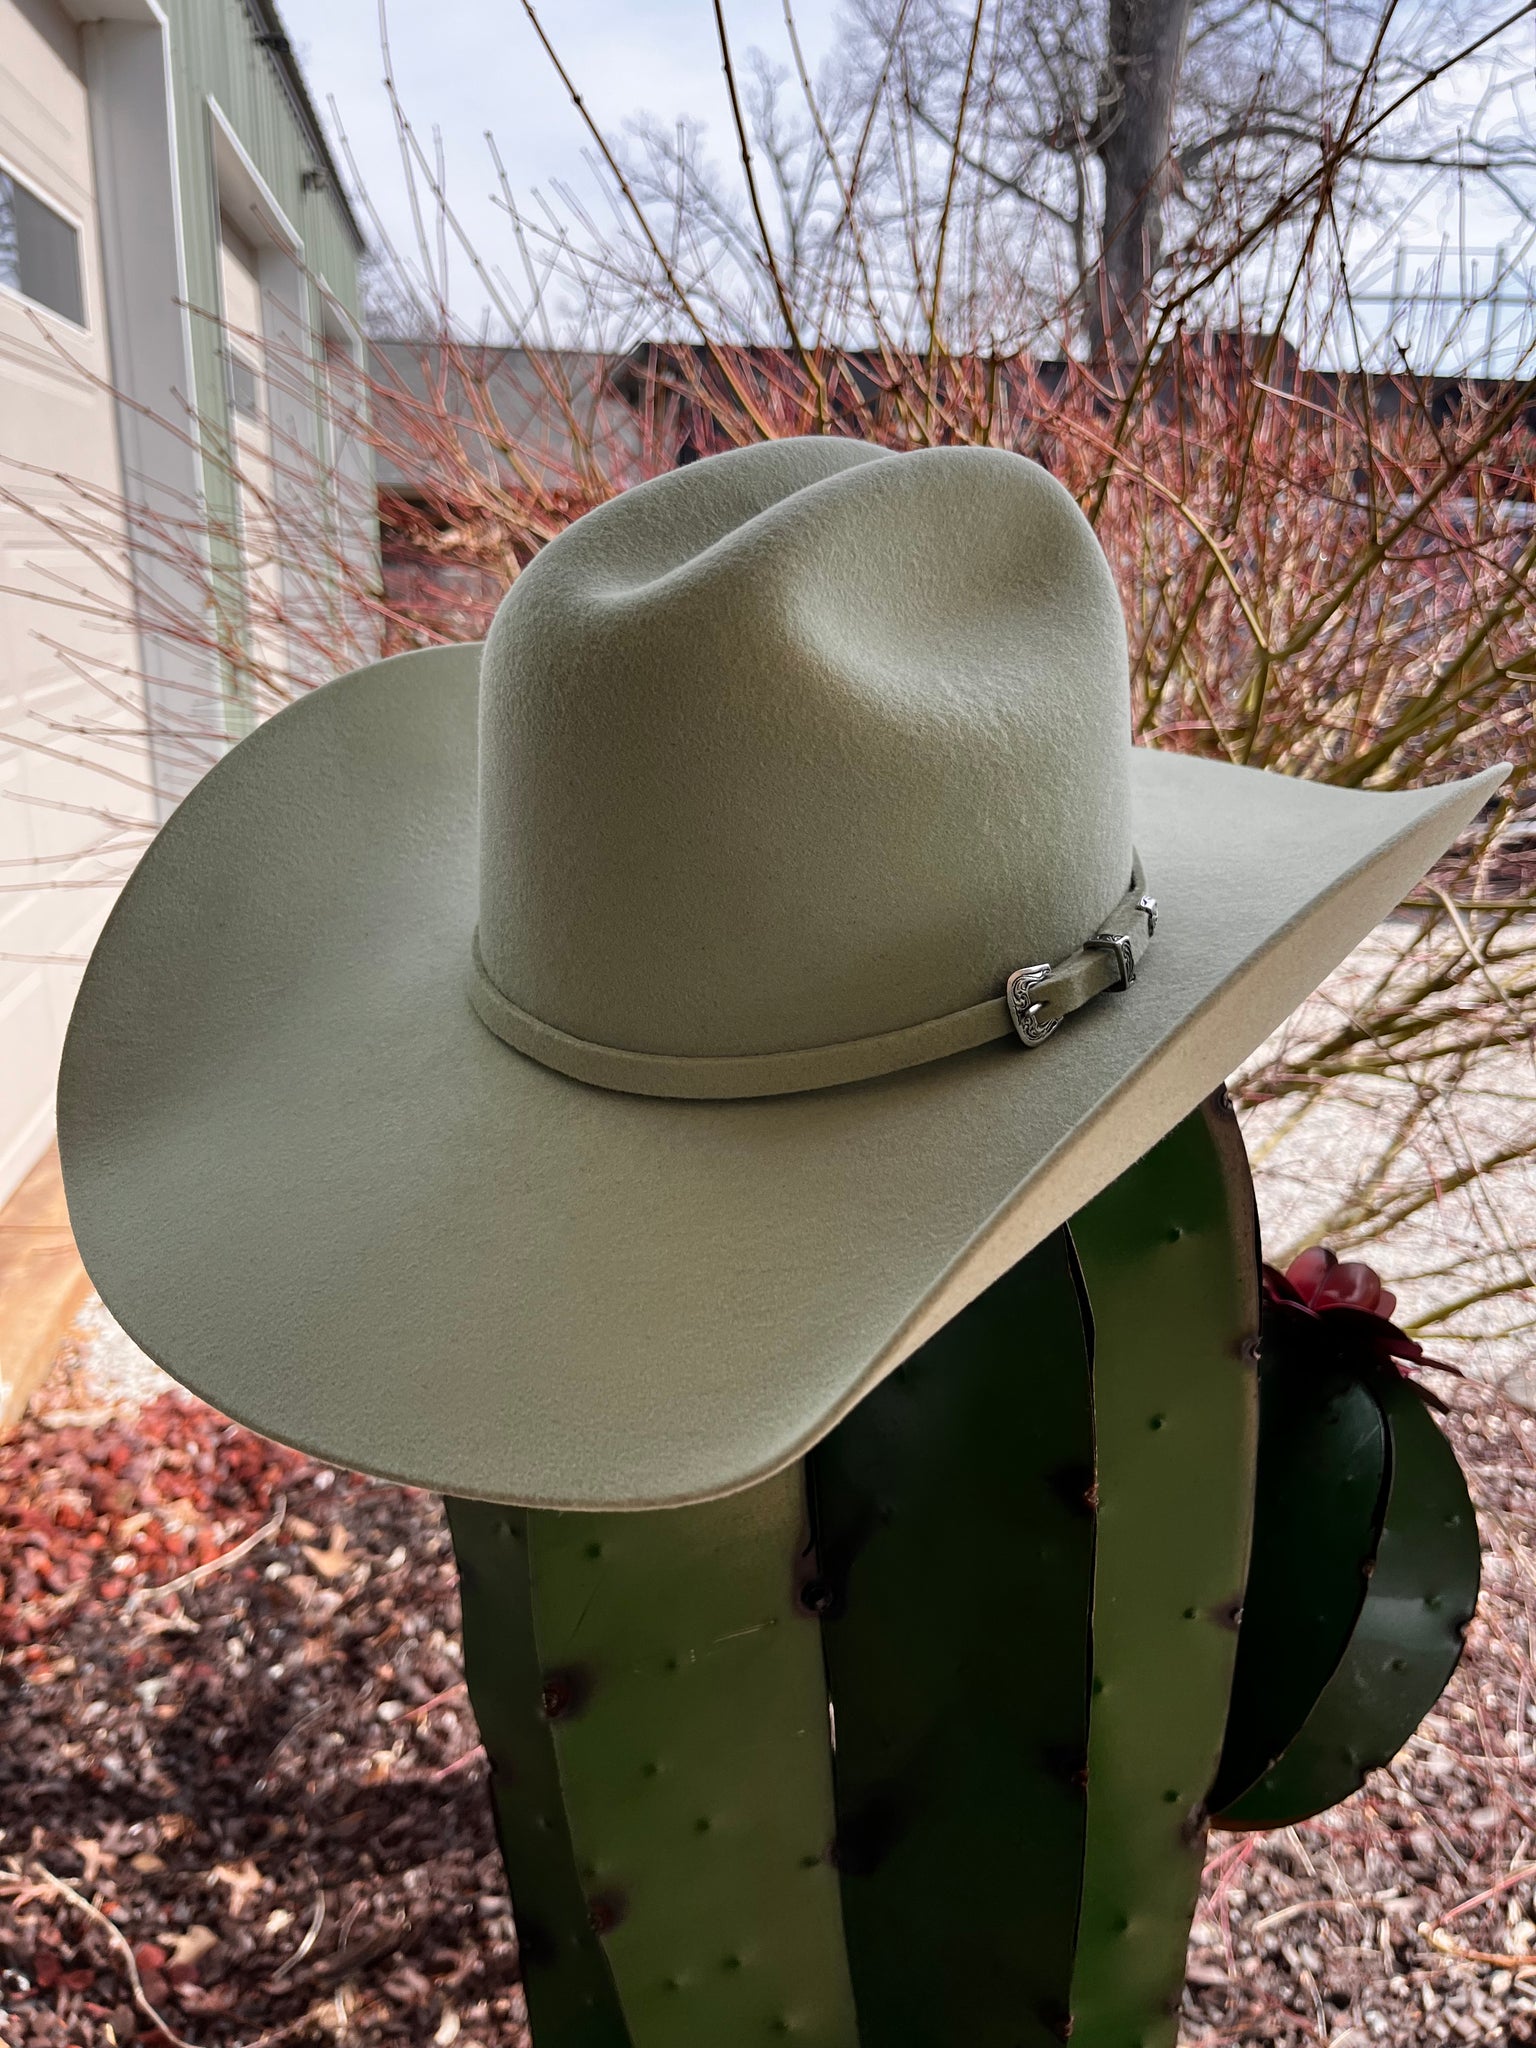 Serratelli Hat Company Colored Wool / Felt Cowboy Hats